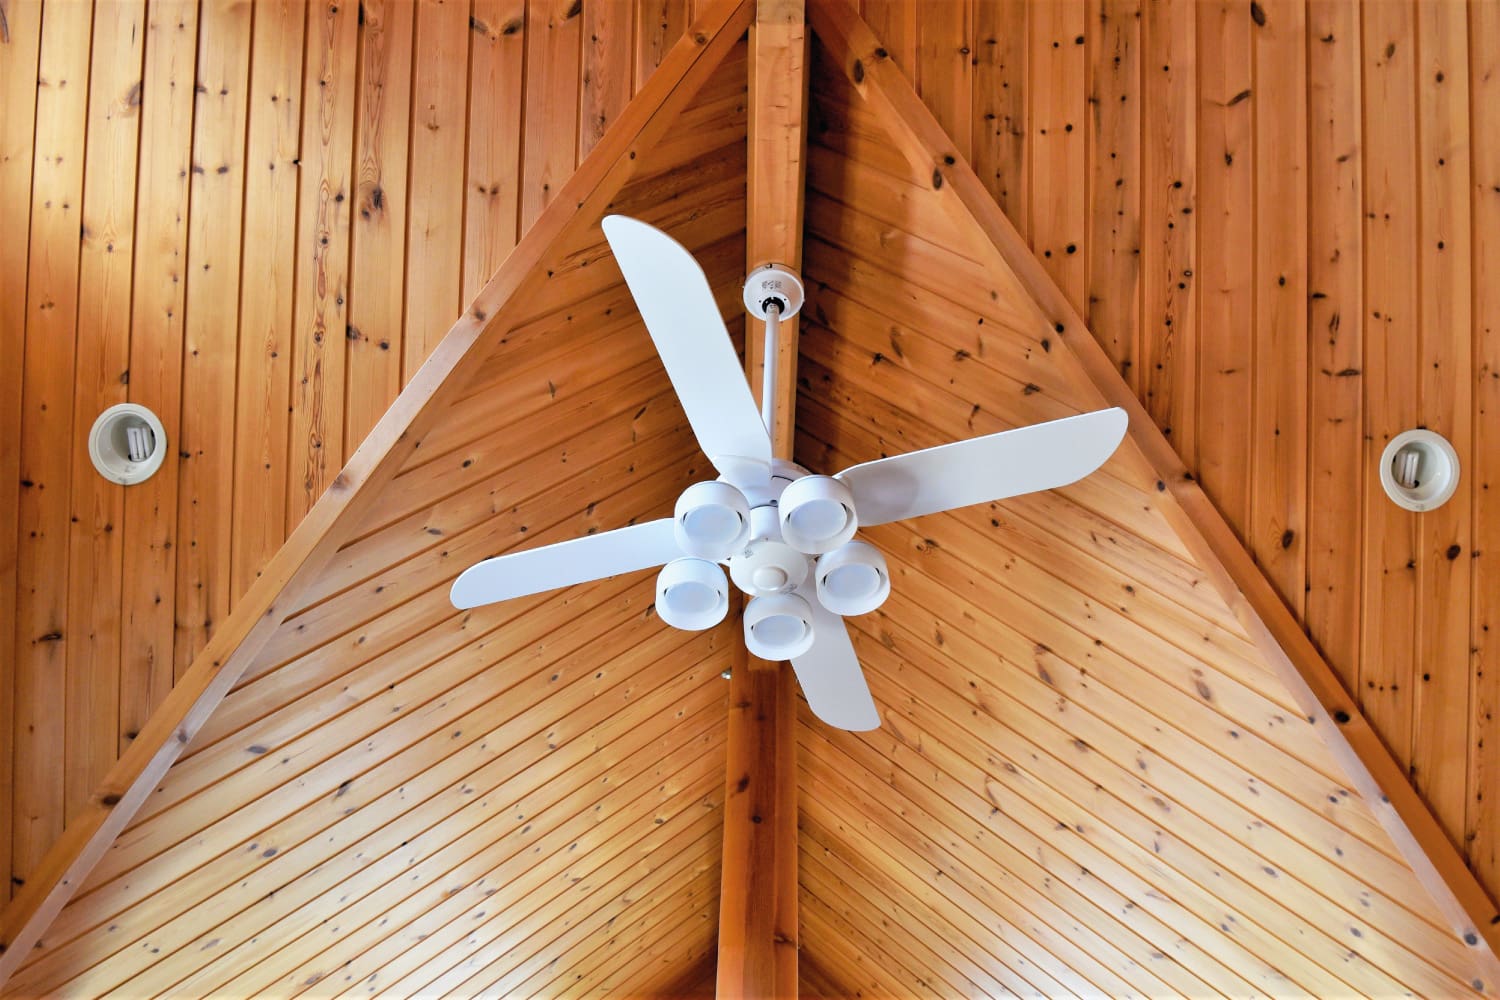 Ventilation fan on wooden ceiling.